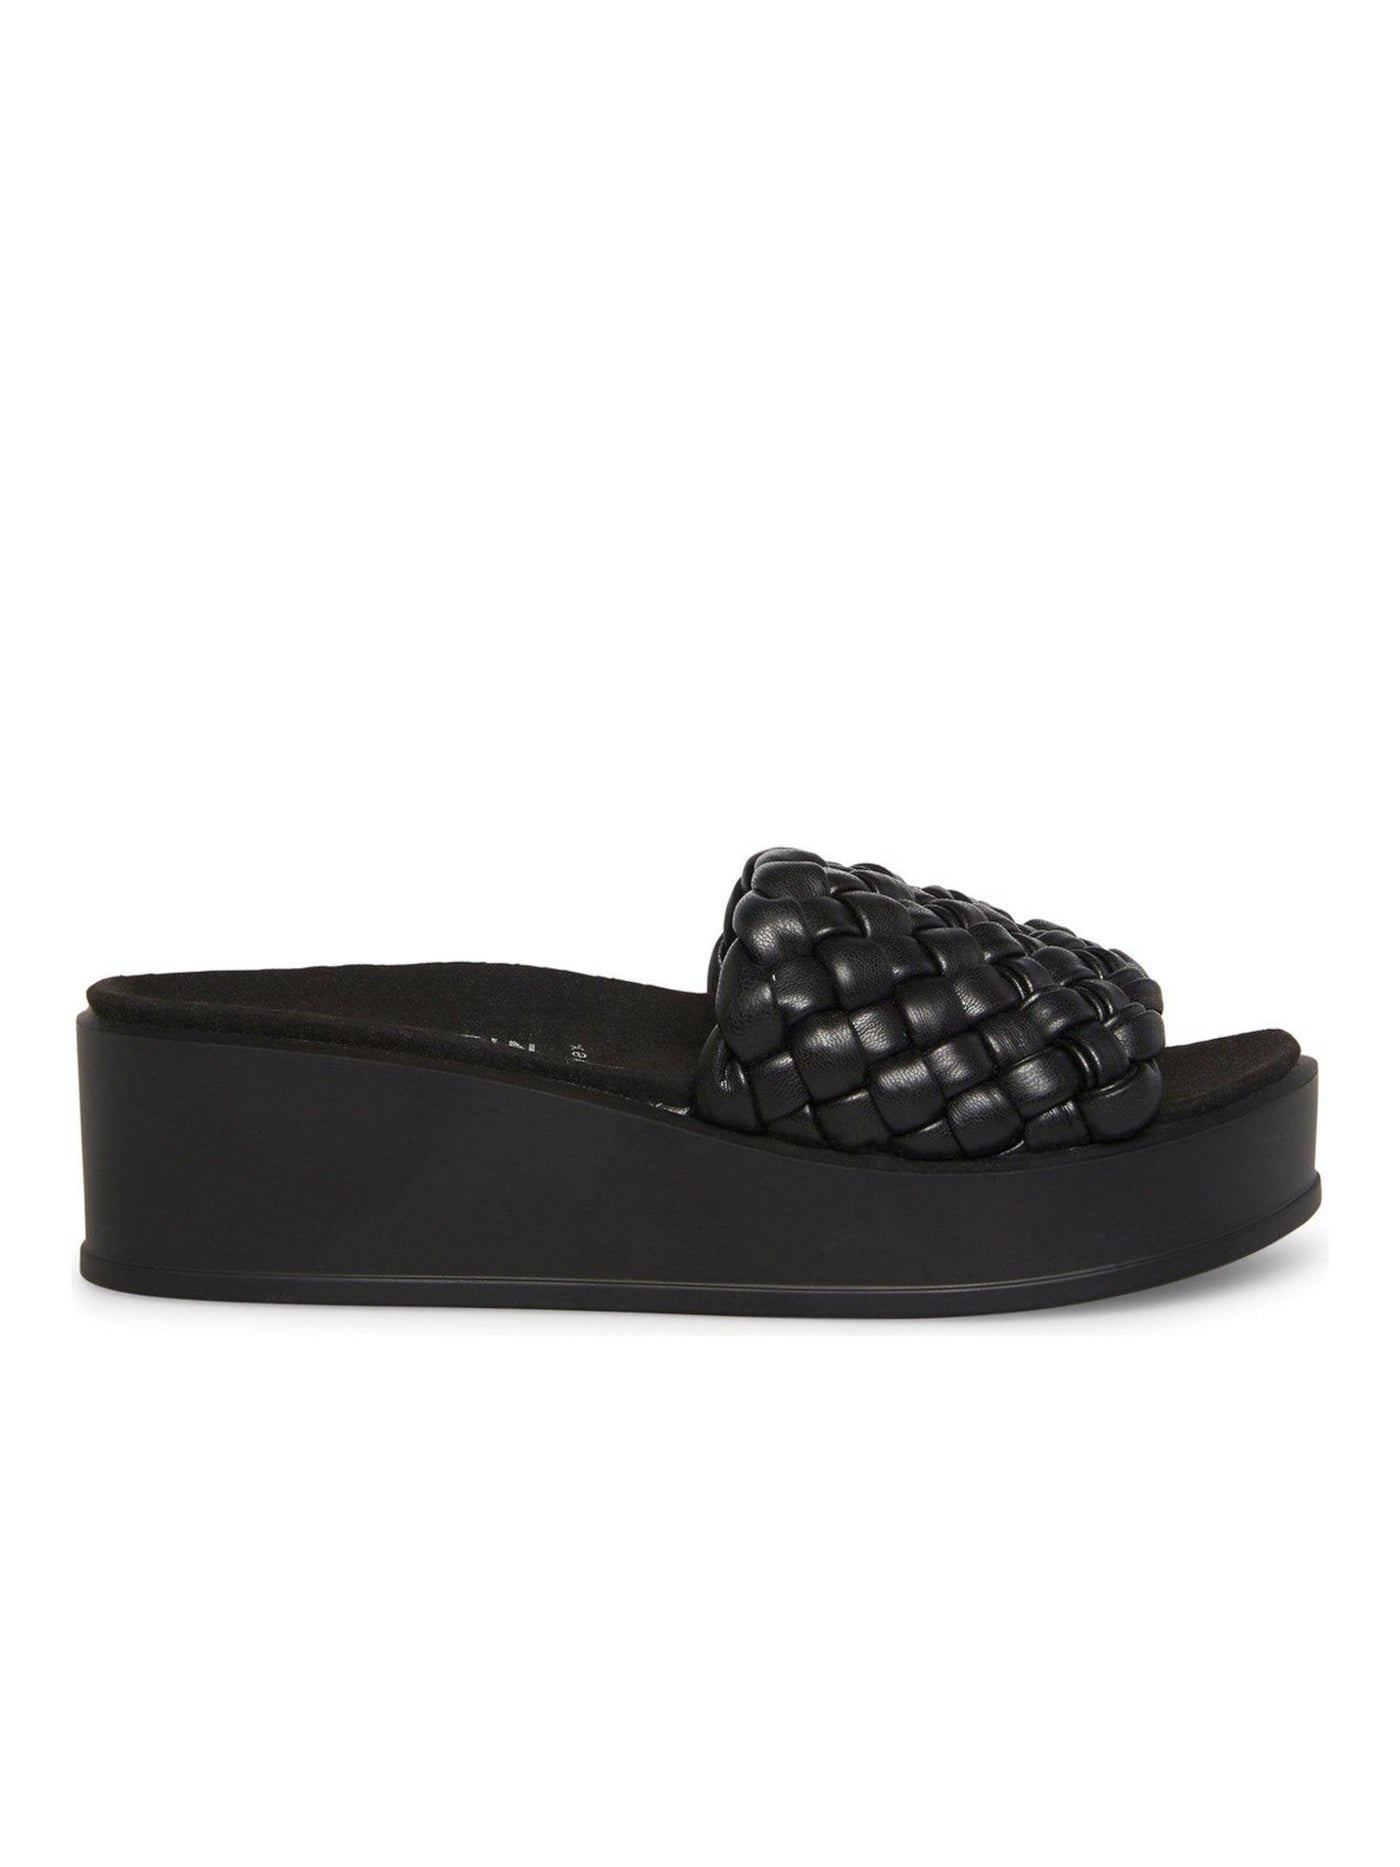 ANNE KLEIN Womens Black 1" Platform Braided Padded Vikki Round Toe Wedge Slip On Sandals Shoes 7.5